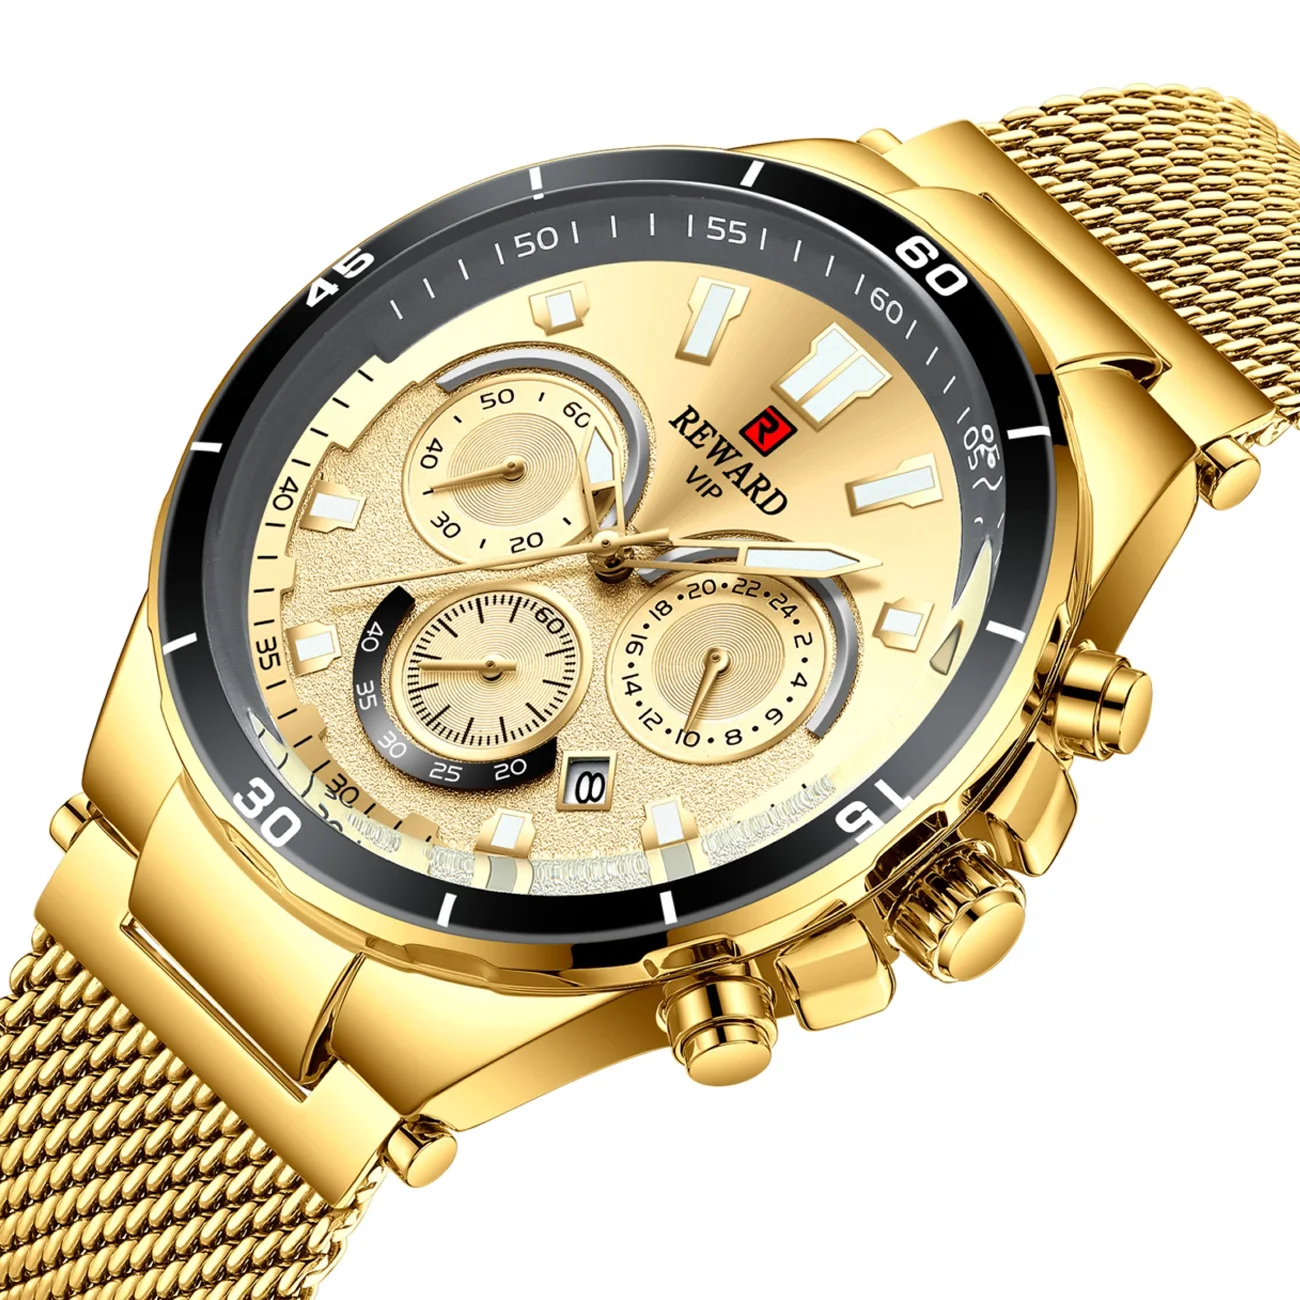 REWARD Chronograph Men Watch Luxury Brand Gold Full Steel Business Quartz Watches Men Sport Military Wrist Watch Analog Quartz